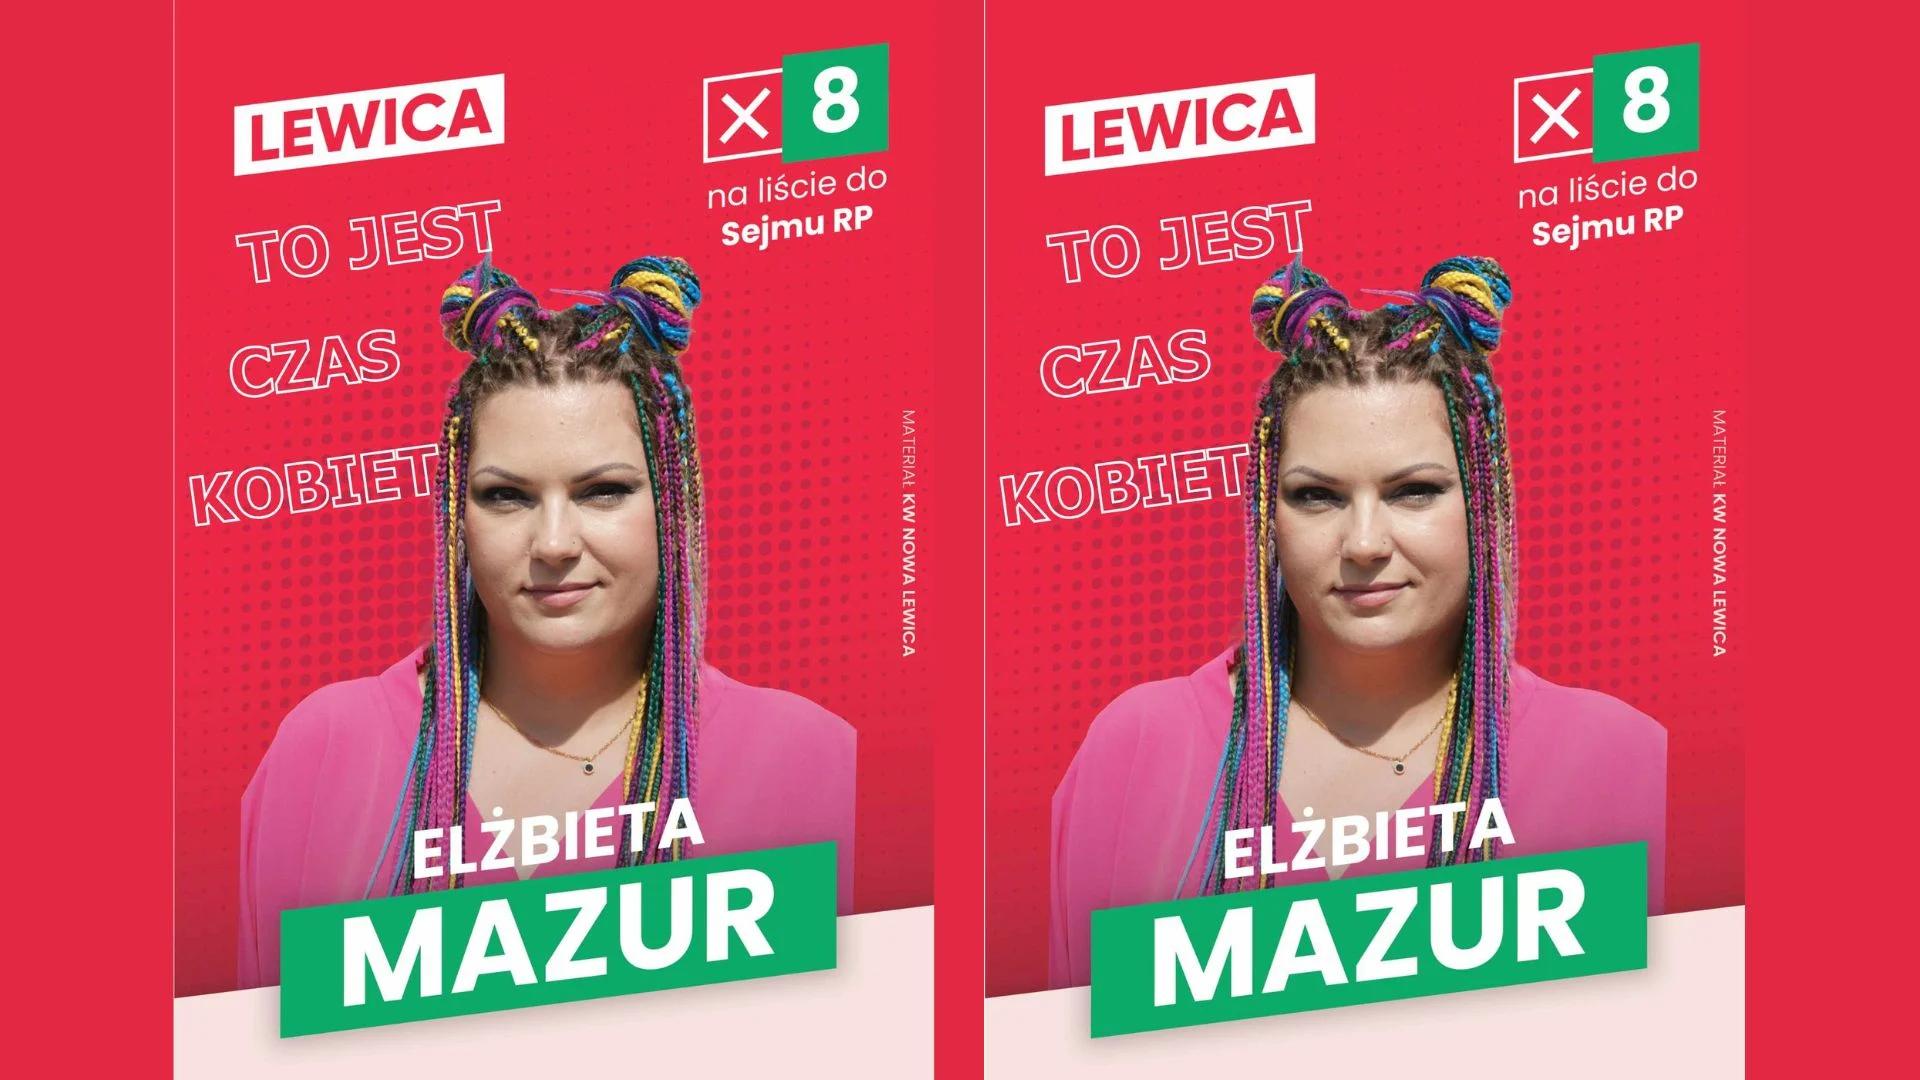 Dwa plakaty wyborcze - na czerwonym tle zdjęcie młodej kobiety z dredami i napis Elżbieta Mazur